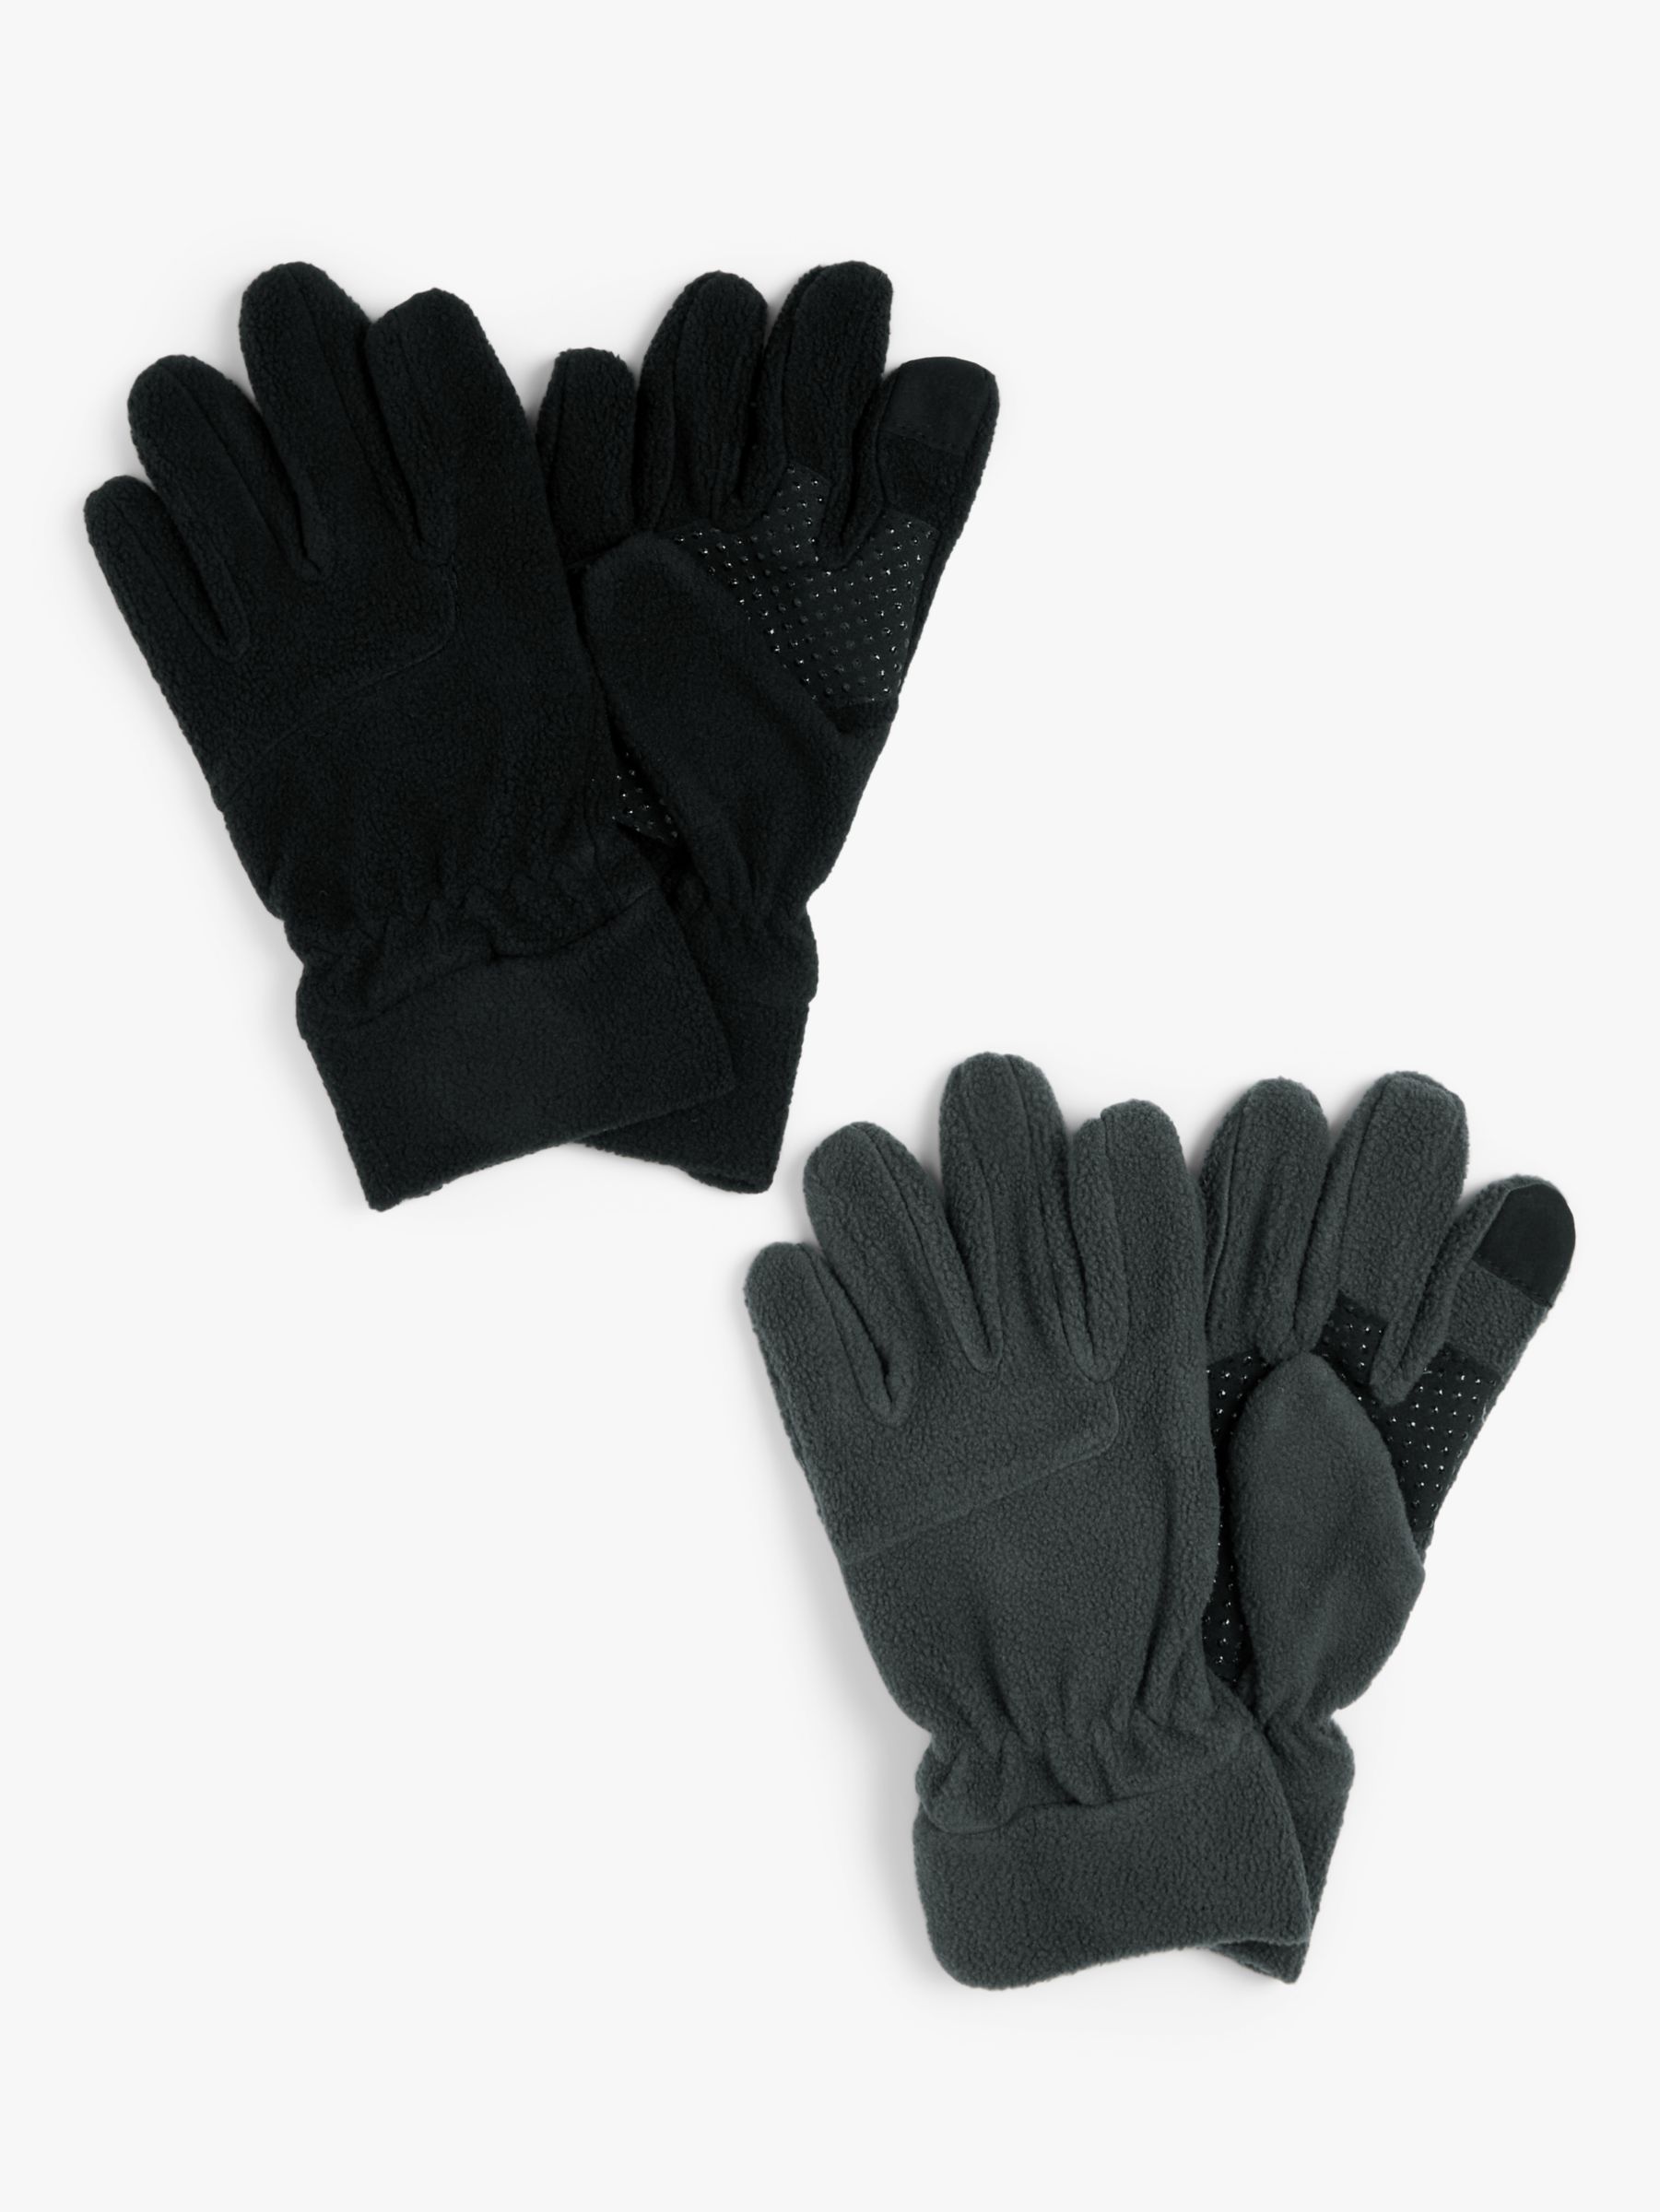 John Lewis Kids' Fleece Gloves, Pack of 2, Black/Grey, 6-8 years